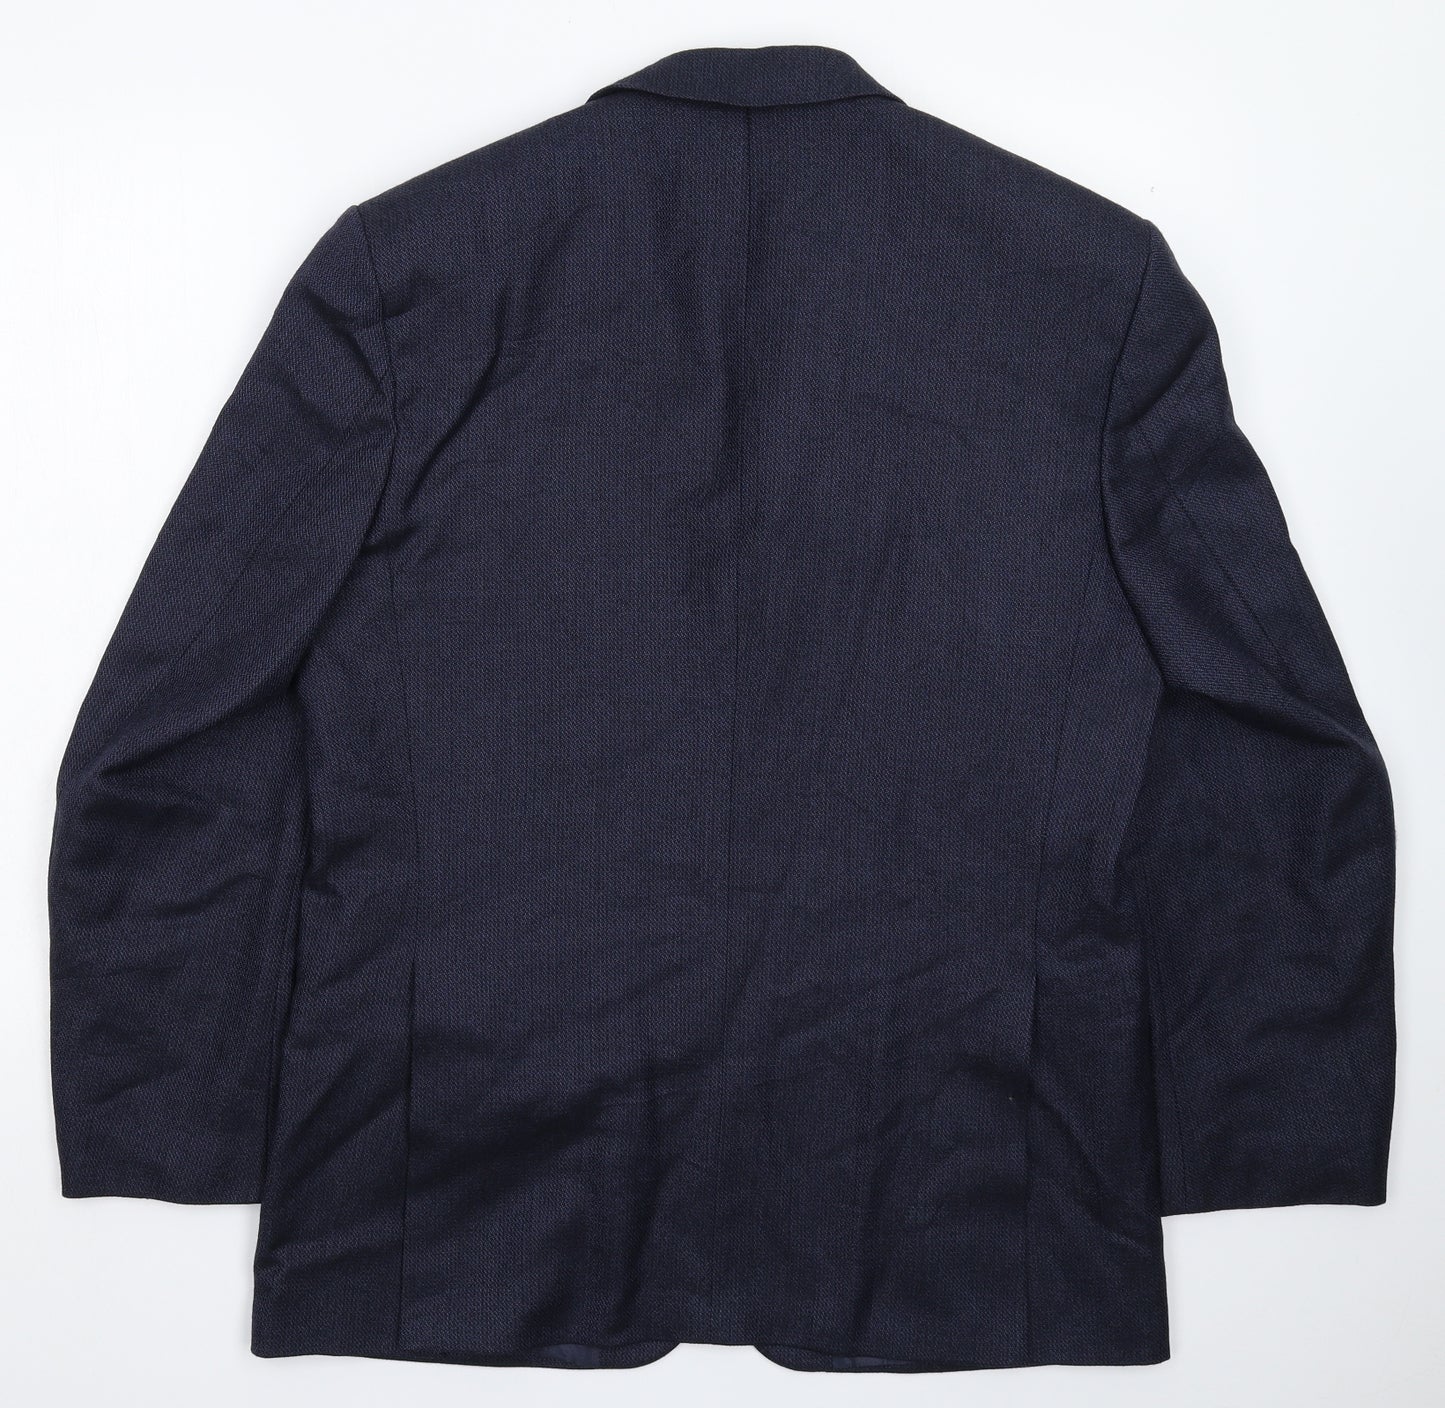 Douglas Mens Blue   Jacket Suit Jacket Size 40